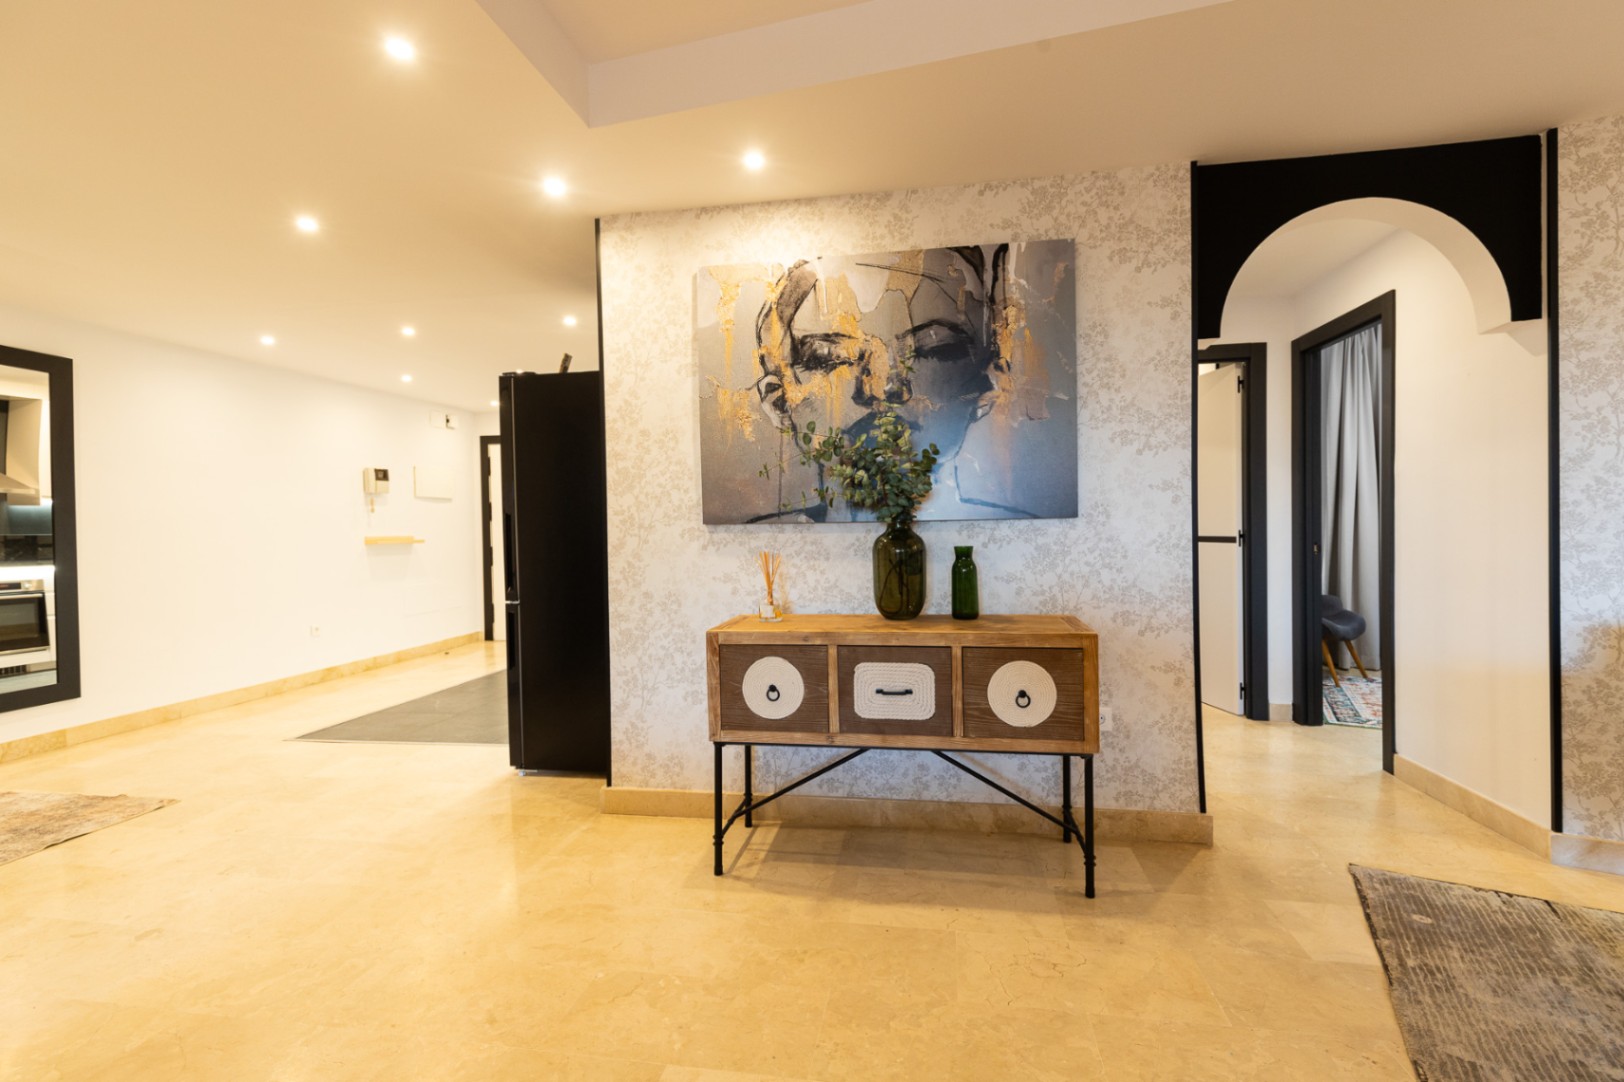 Oportunidad de adquirir este impecable apartamento recién reformado en plena milla de oro de Marbella